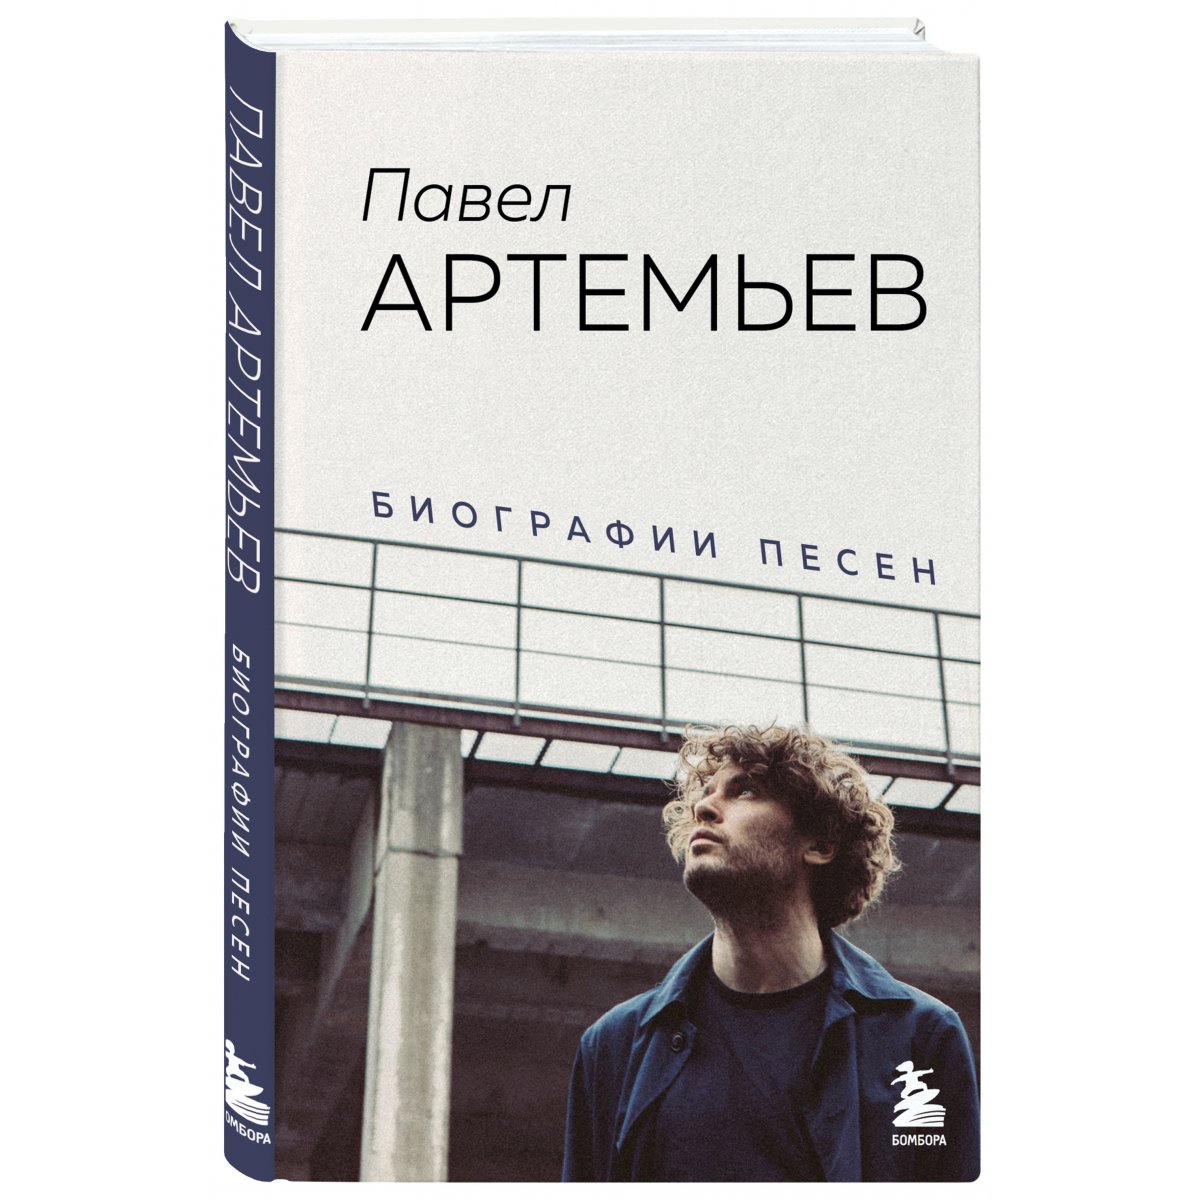 Павел Артемьев биографии песен